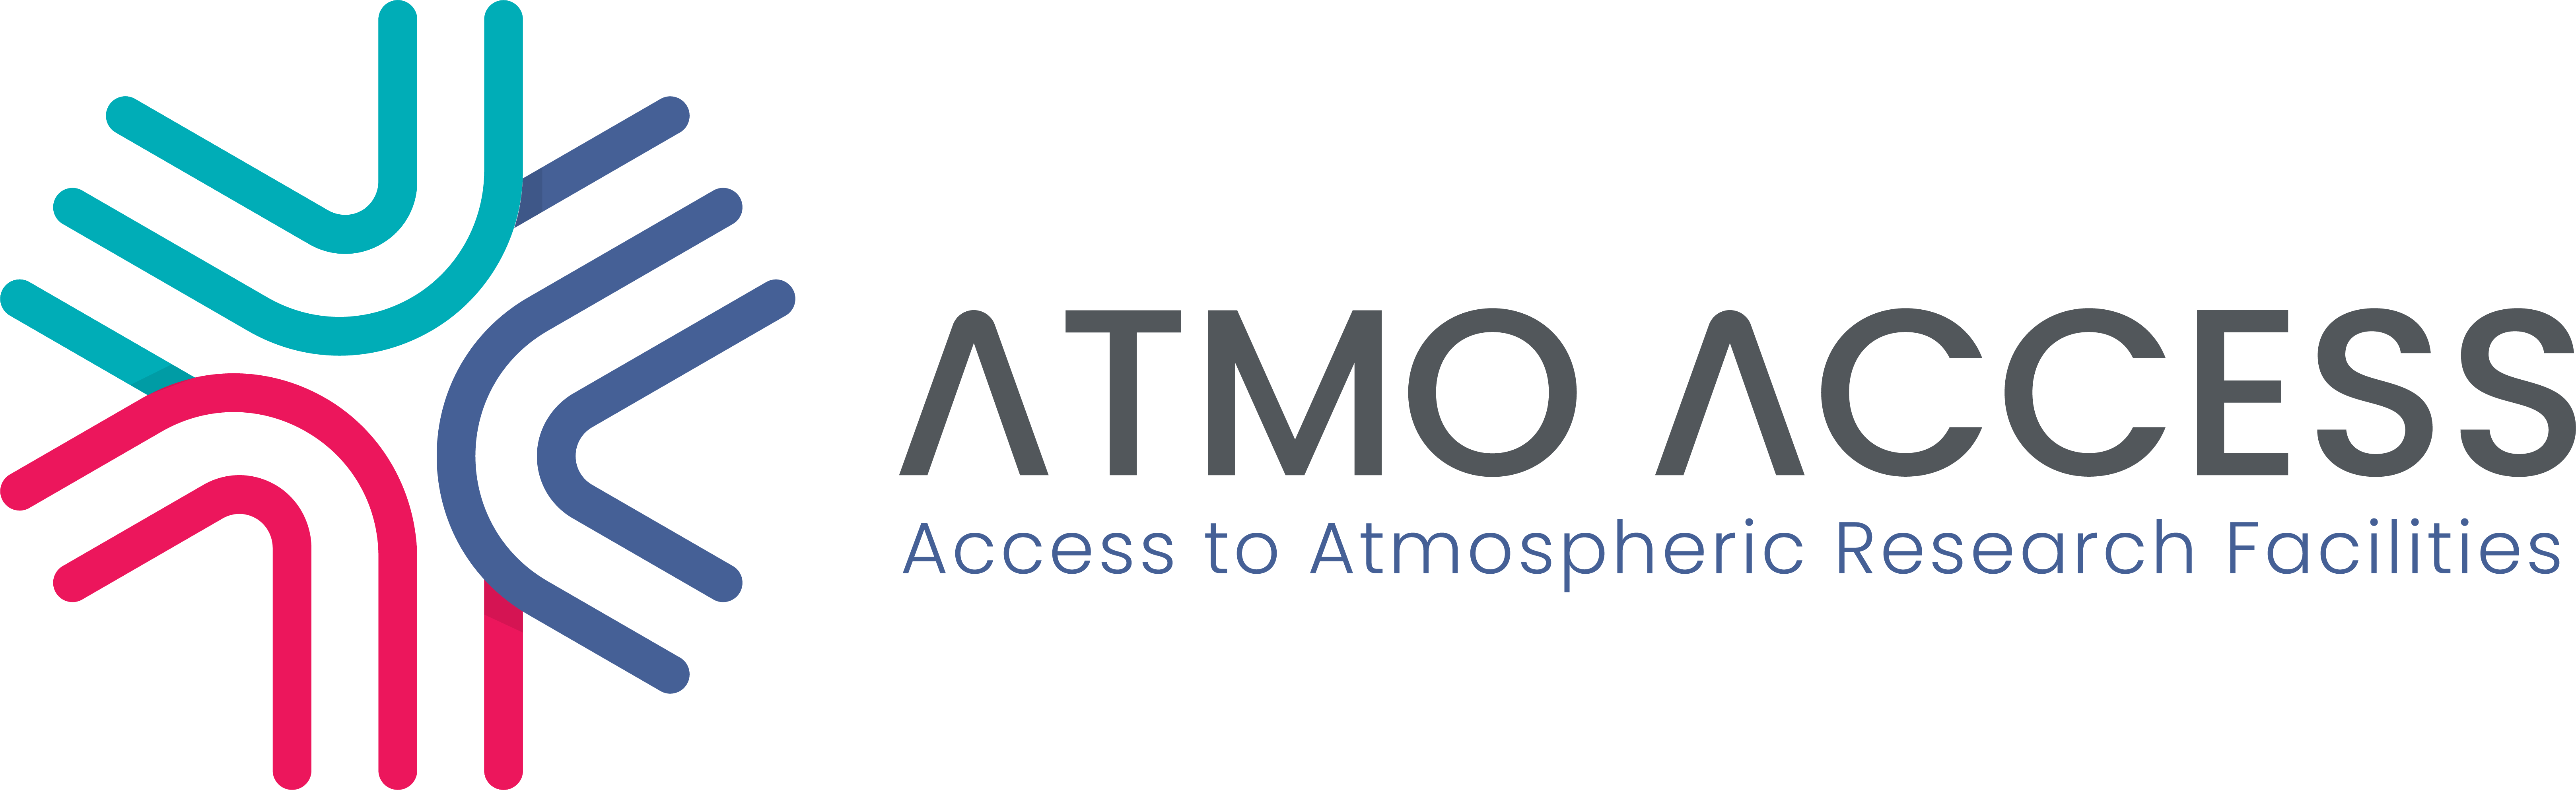 logo atmo access